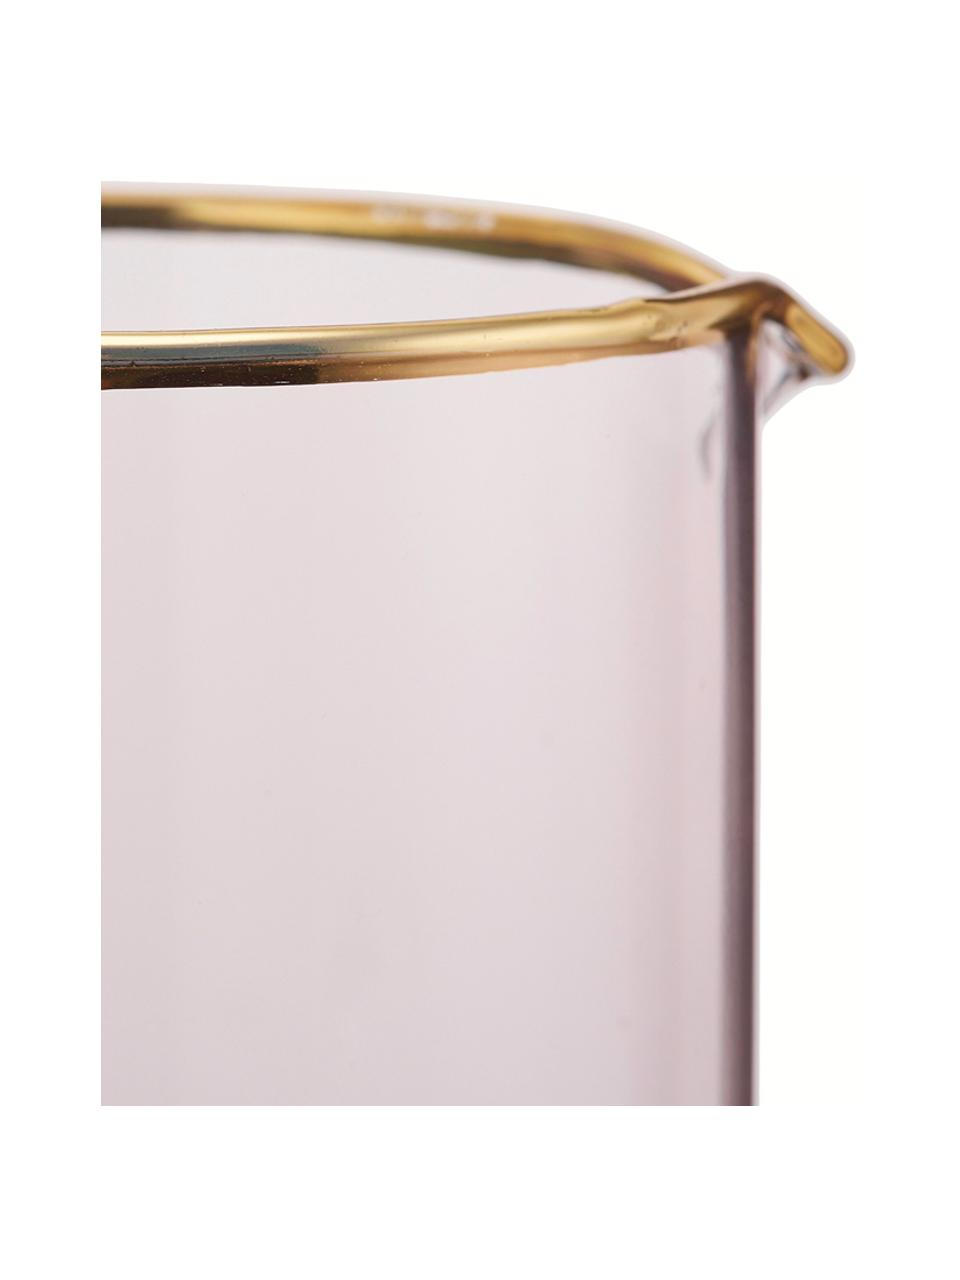 Pichet verre teinté rose Chloe, 1,6 l, Verre, Pêche, haut. 25 cm, 1,6 l